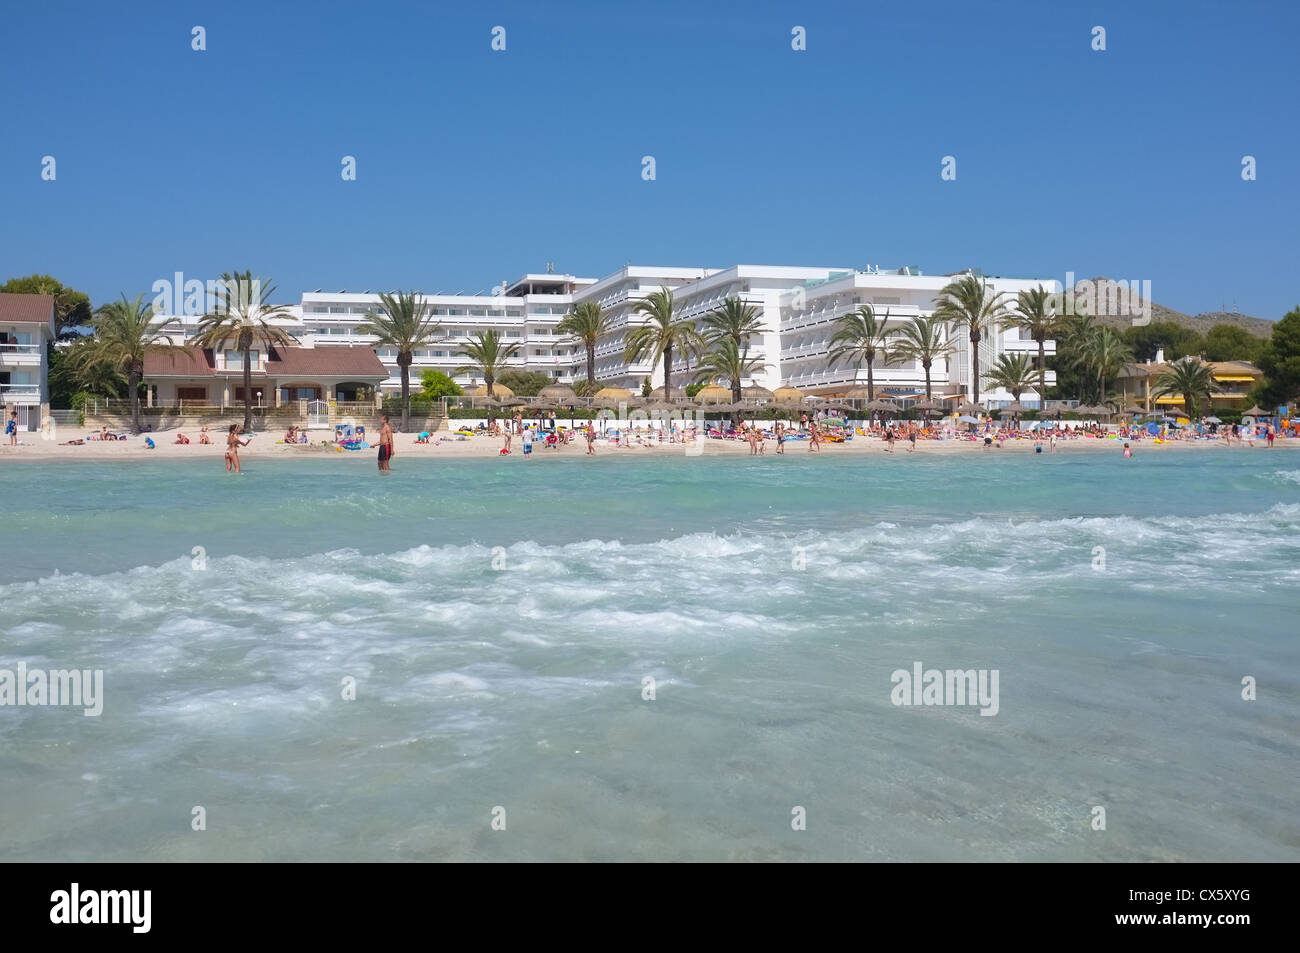 Una spiaggia vacanze scena sull'isola di Maiorca guardando dal mare per gli alberghi e la spiaggia Foto Stock